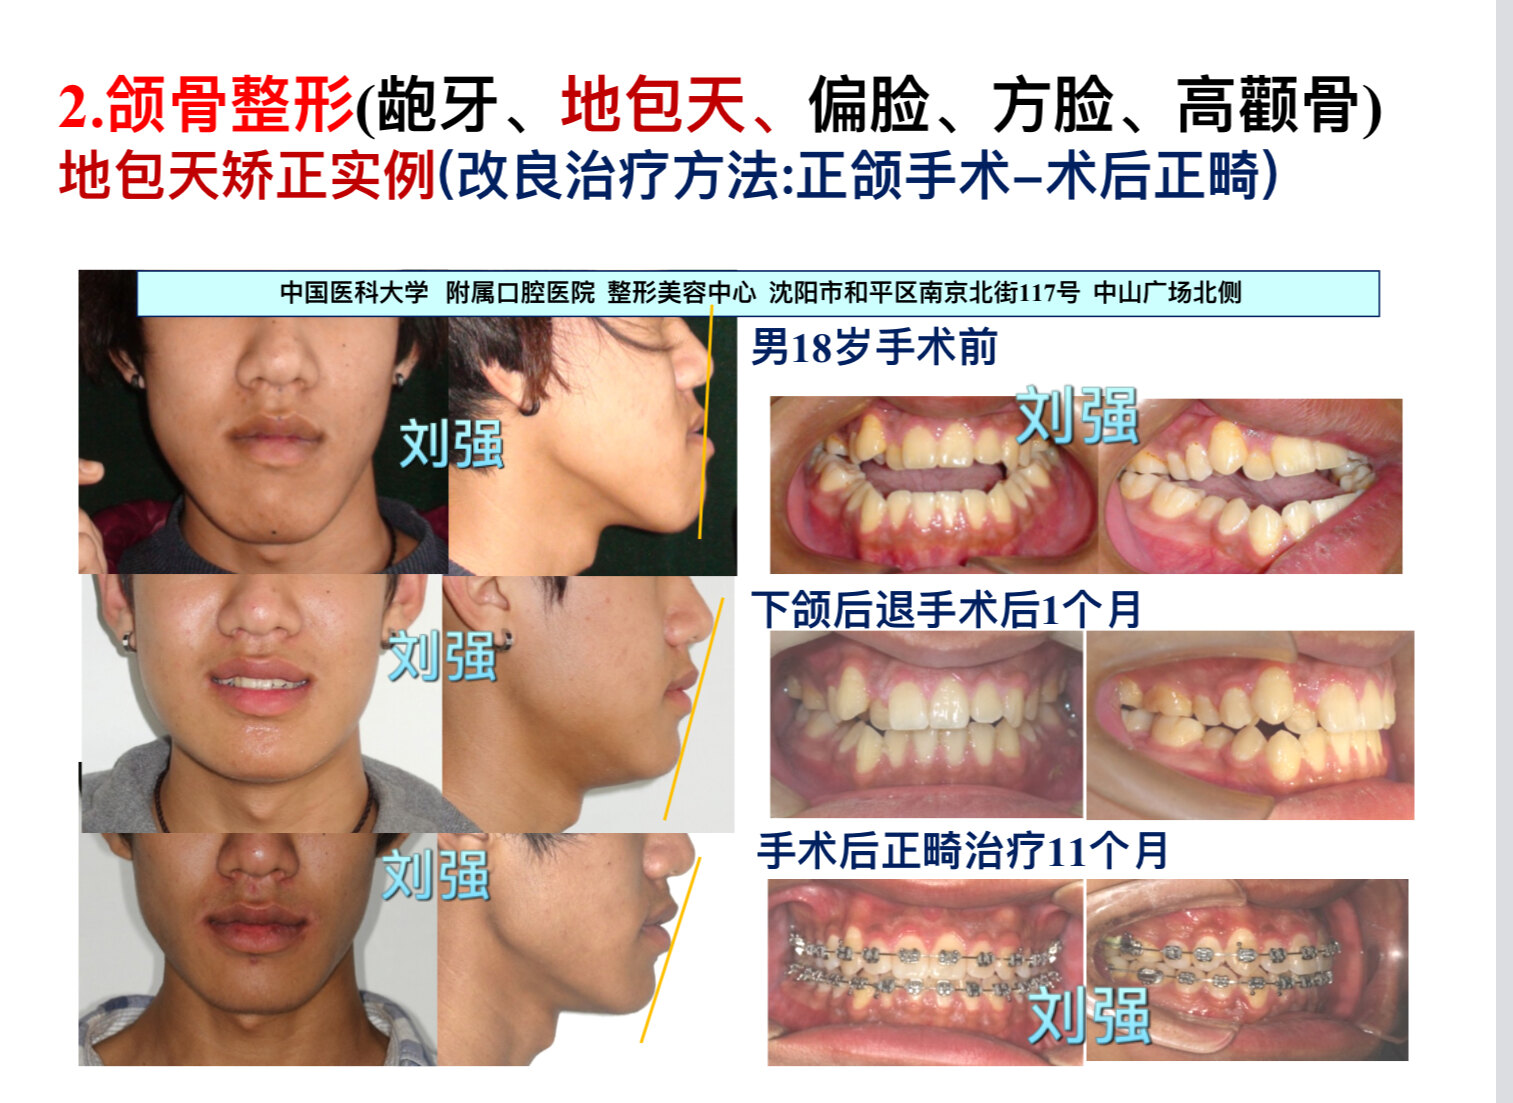 手术前及手术后面相和牙齿咬合关系的对比